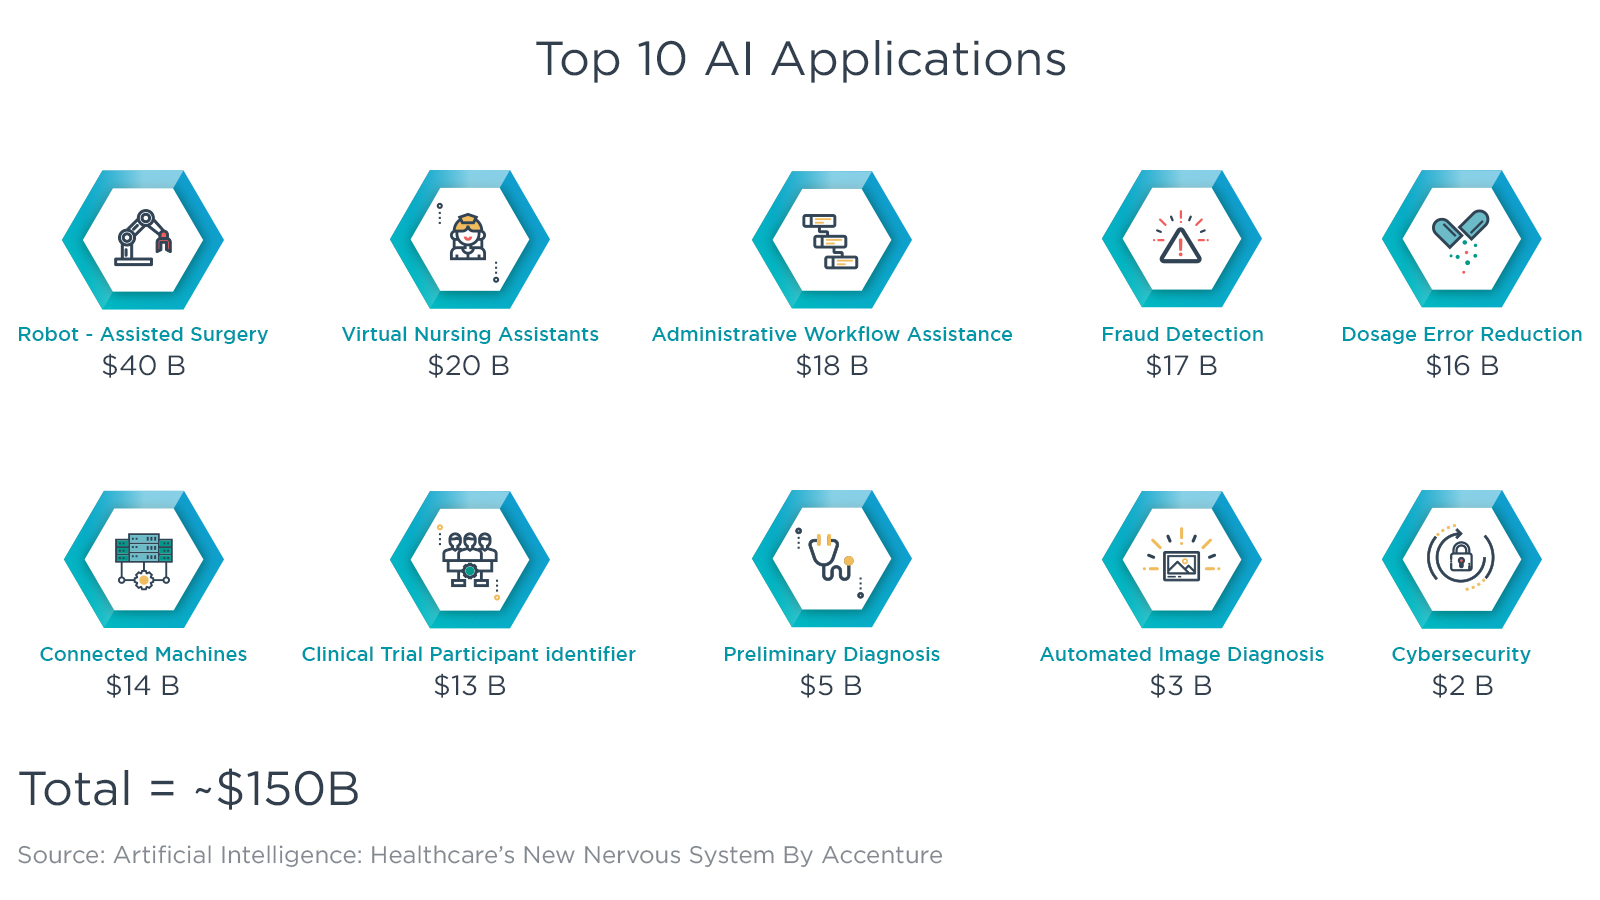 Top 10 AI Applications